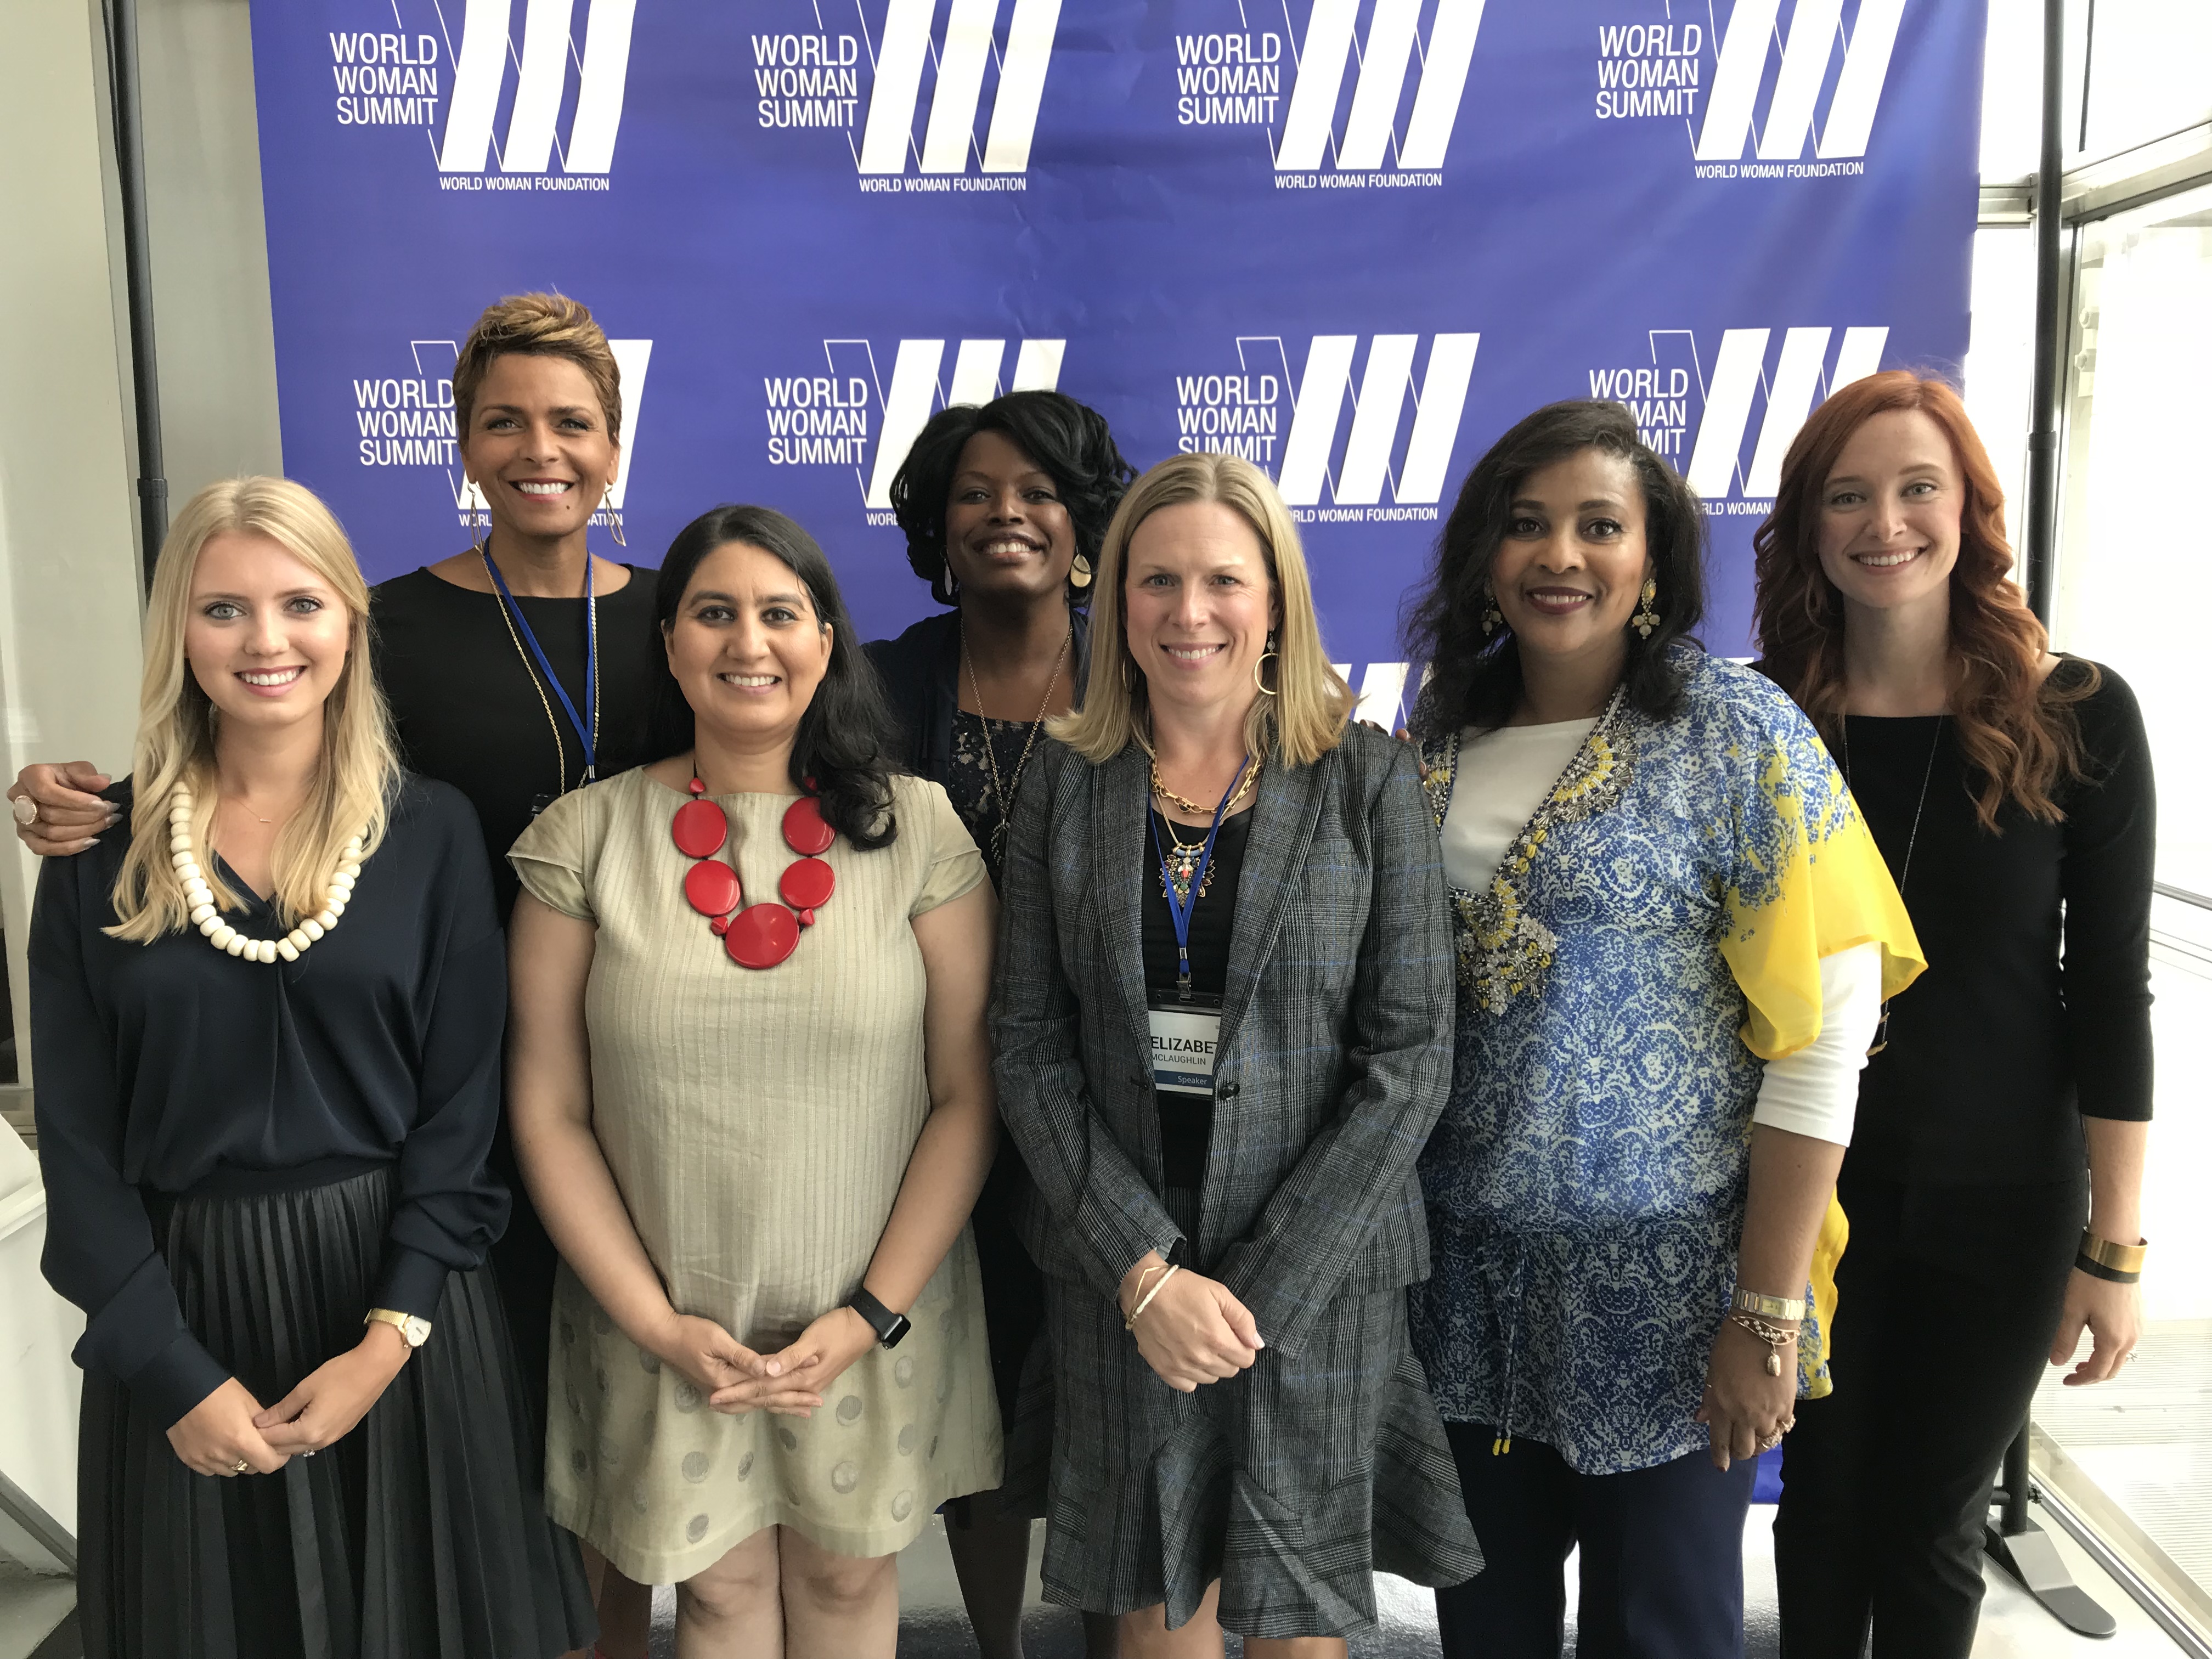 Social Entrepreneurship Panel at World Woman Summit 2017